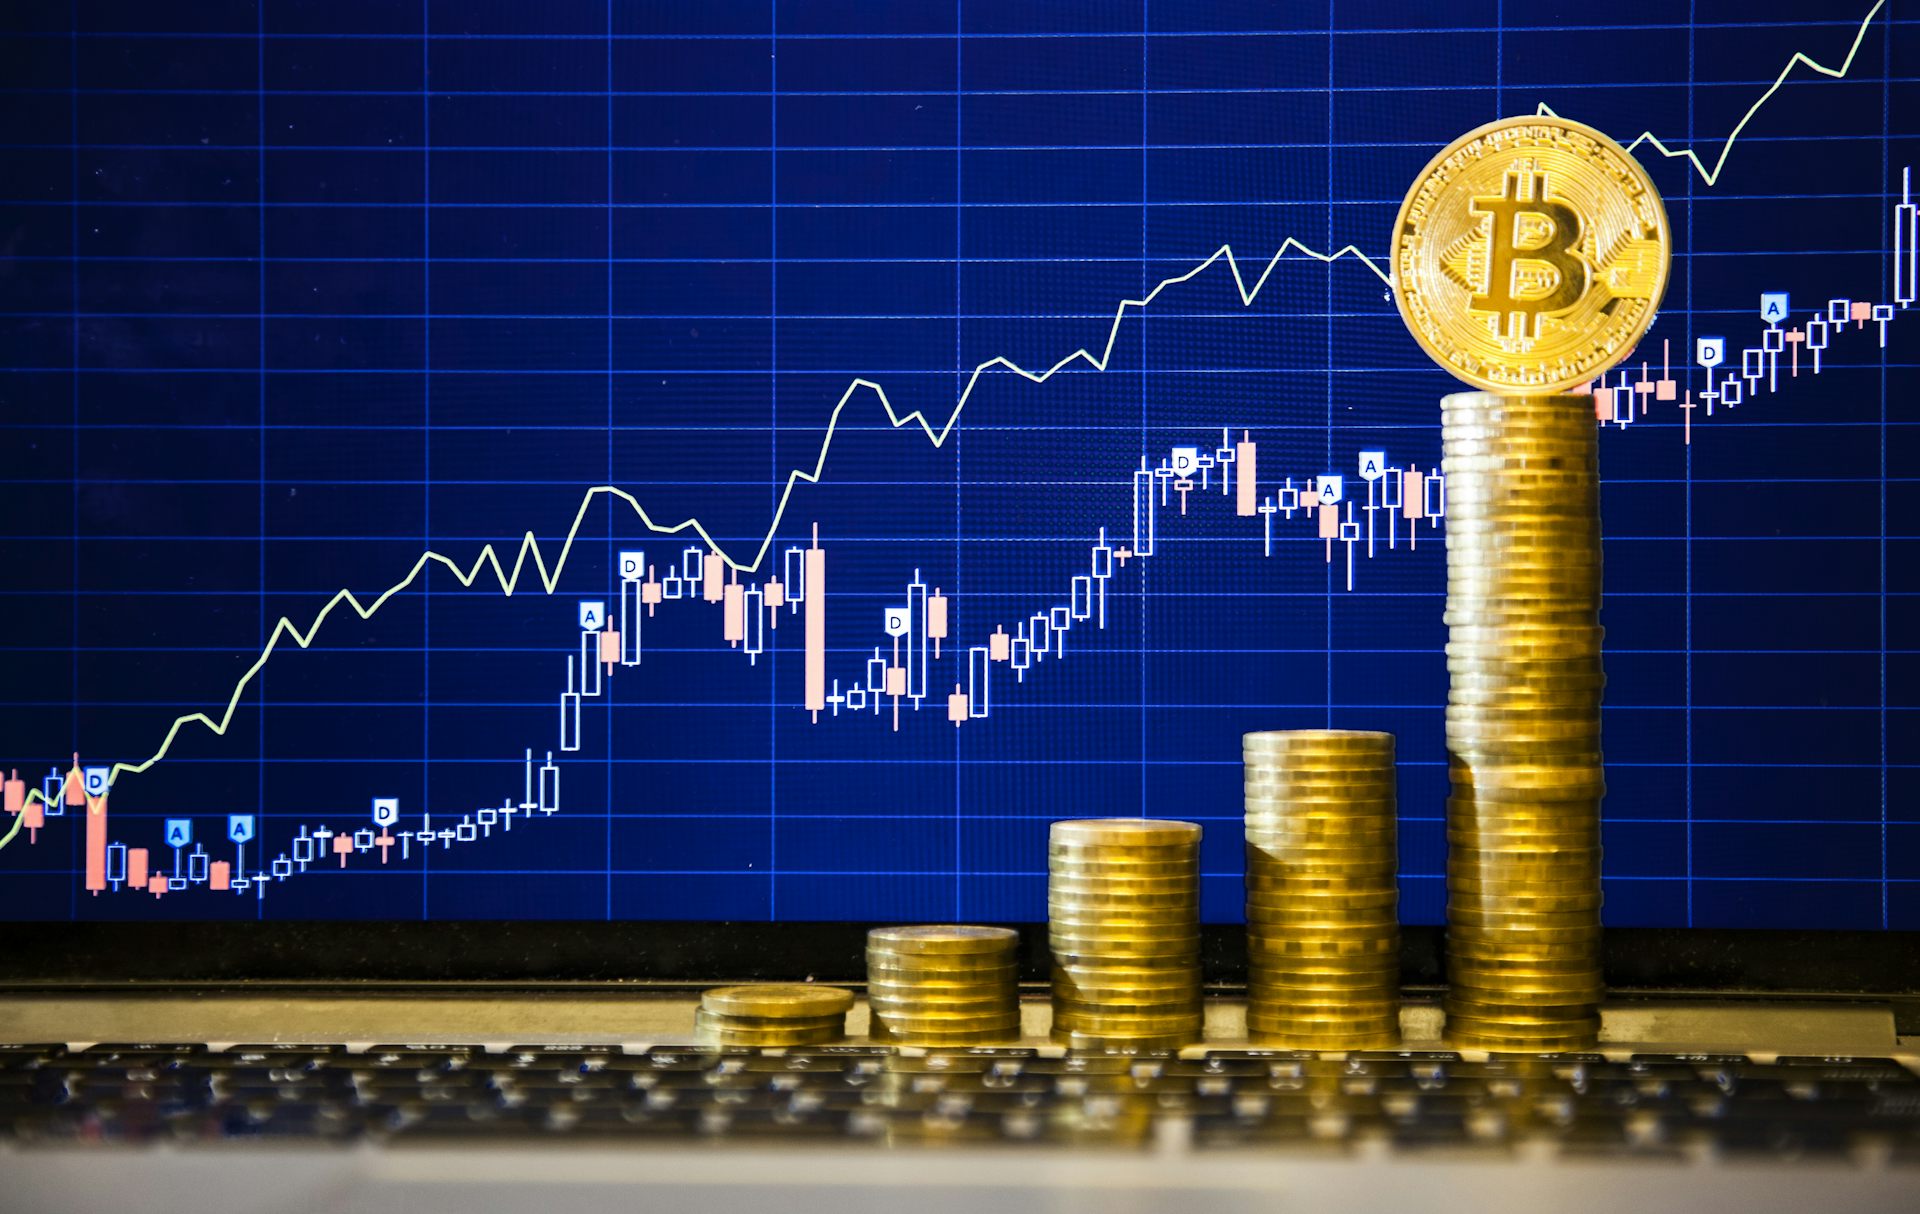 Bitcoin USD (BTC-USD) Price, Value, News & History - Yahoo Finance